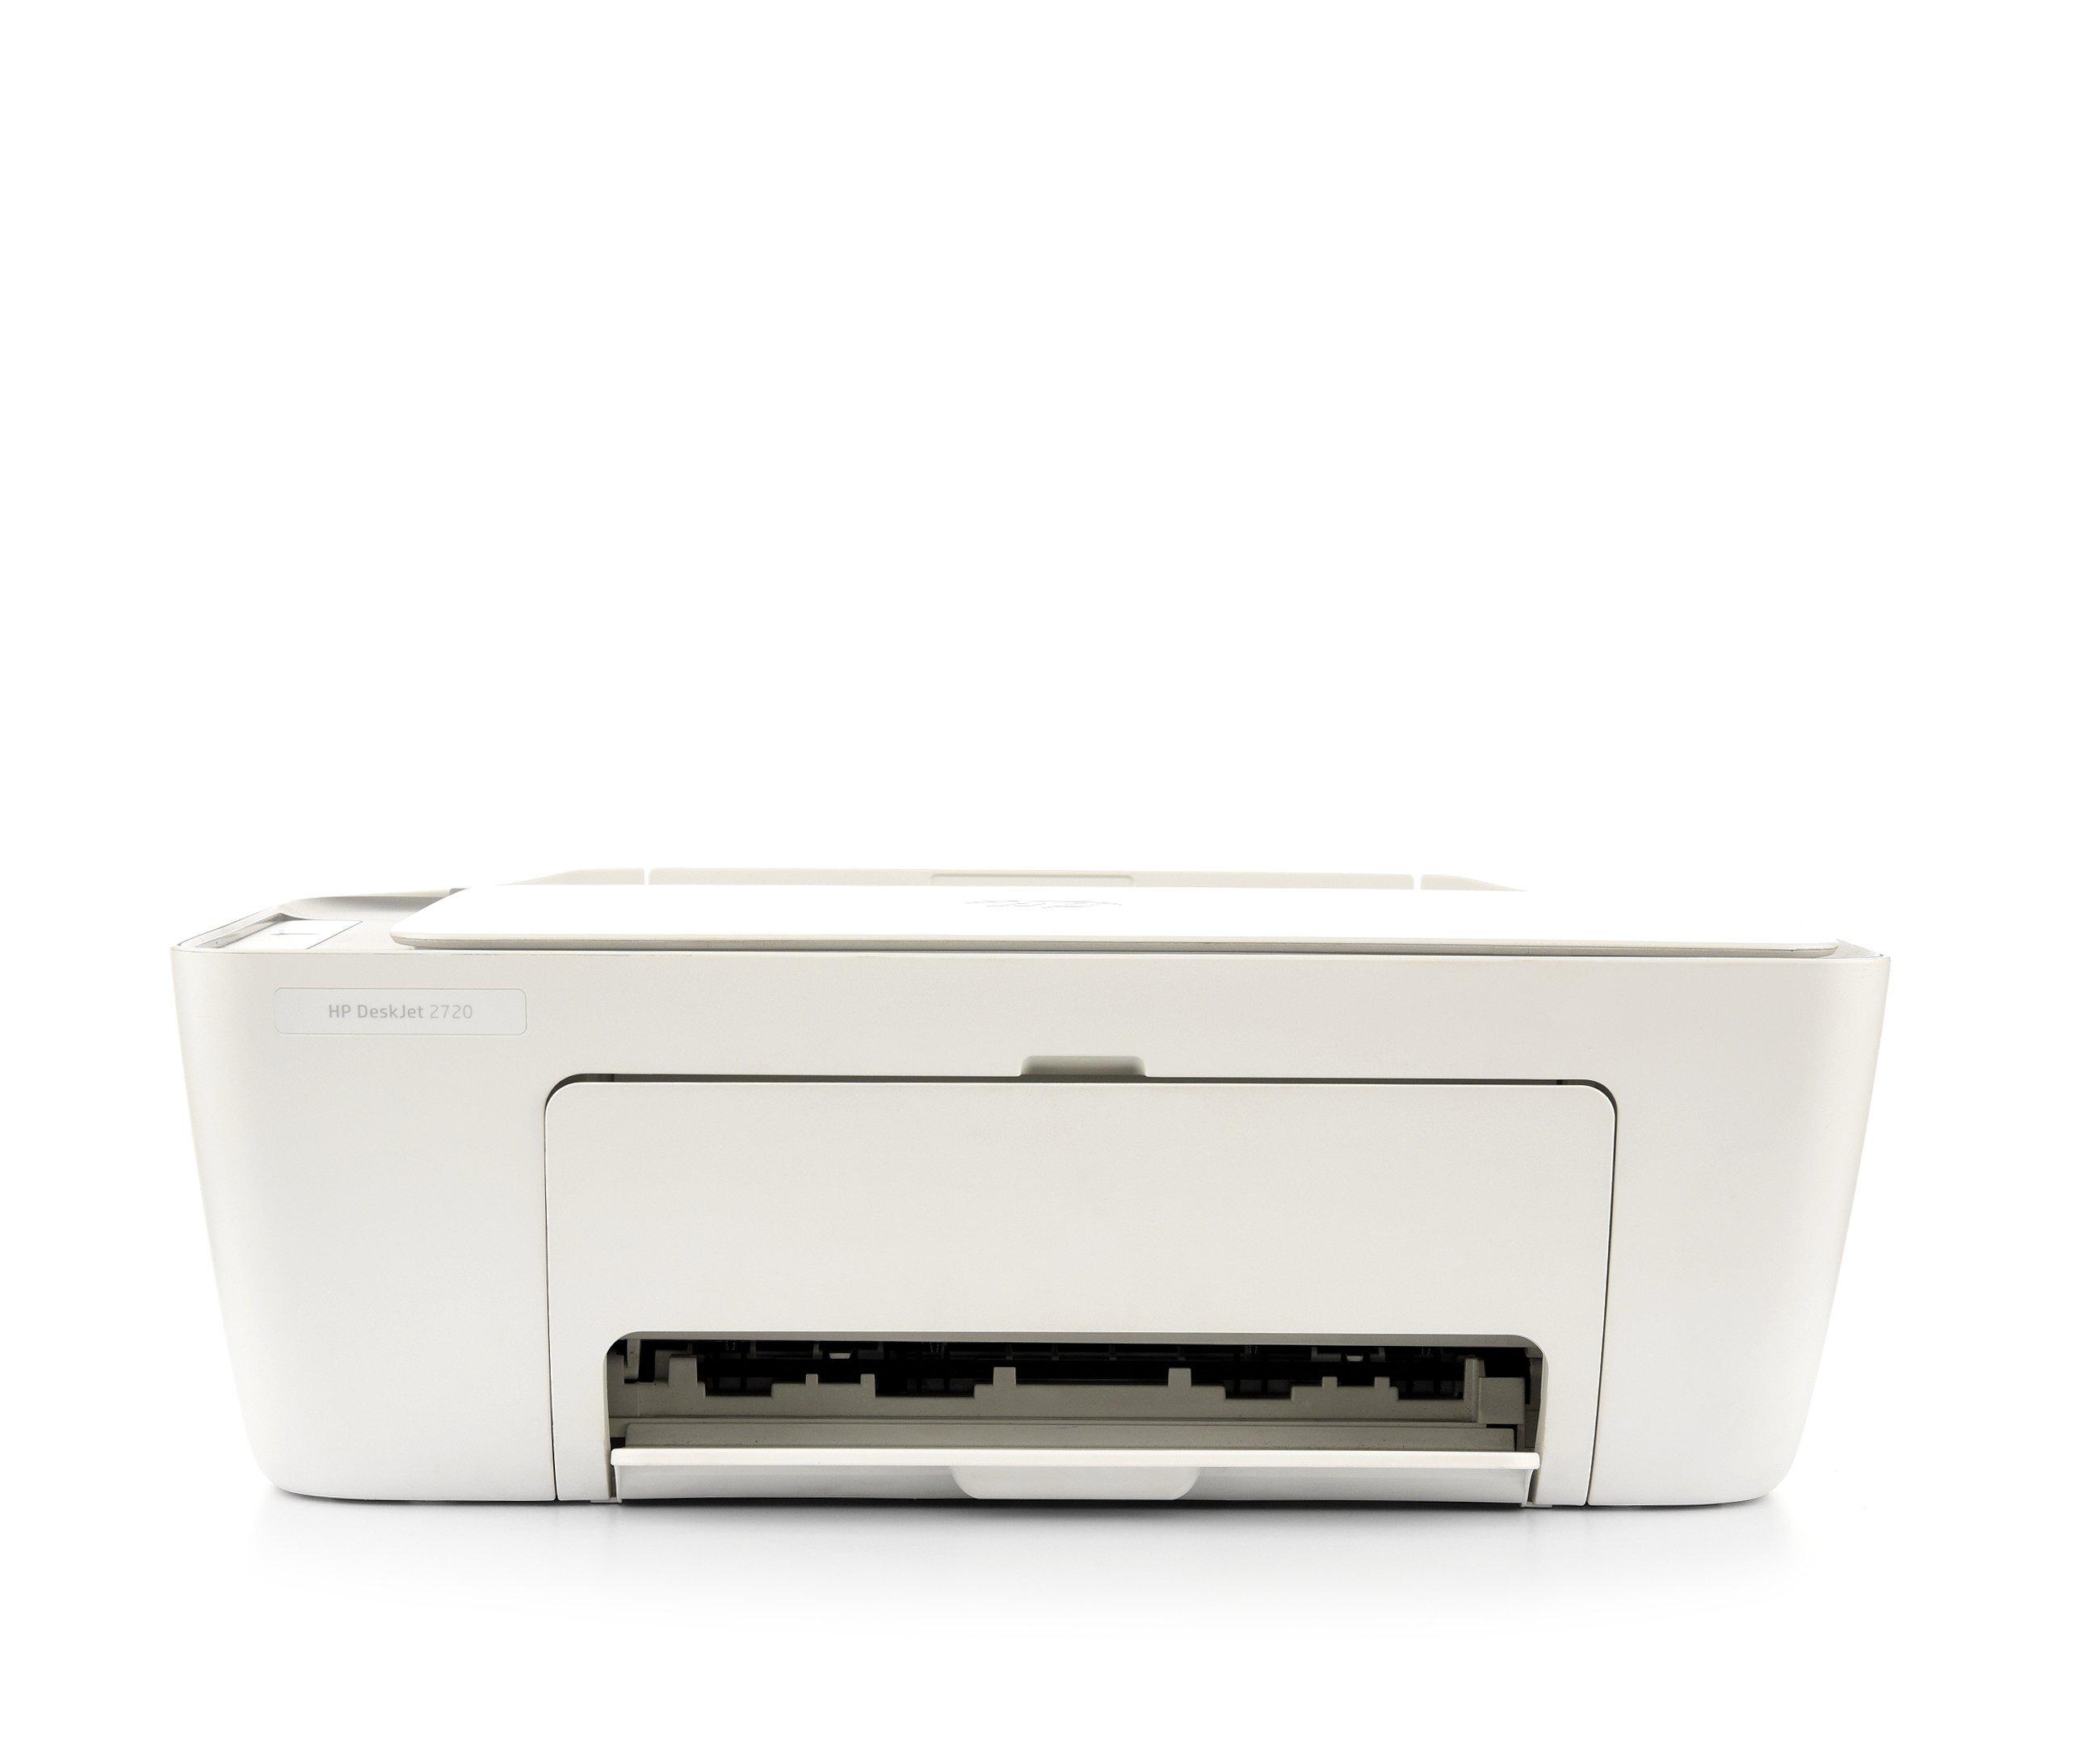 HP DeskJet 2720 All-in-One Printer, Print, Copy, Scan eXtra Saudi